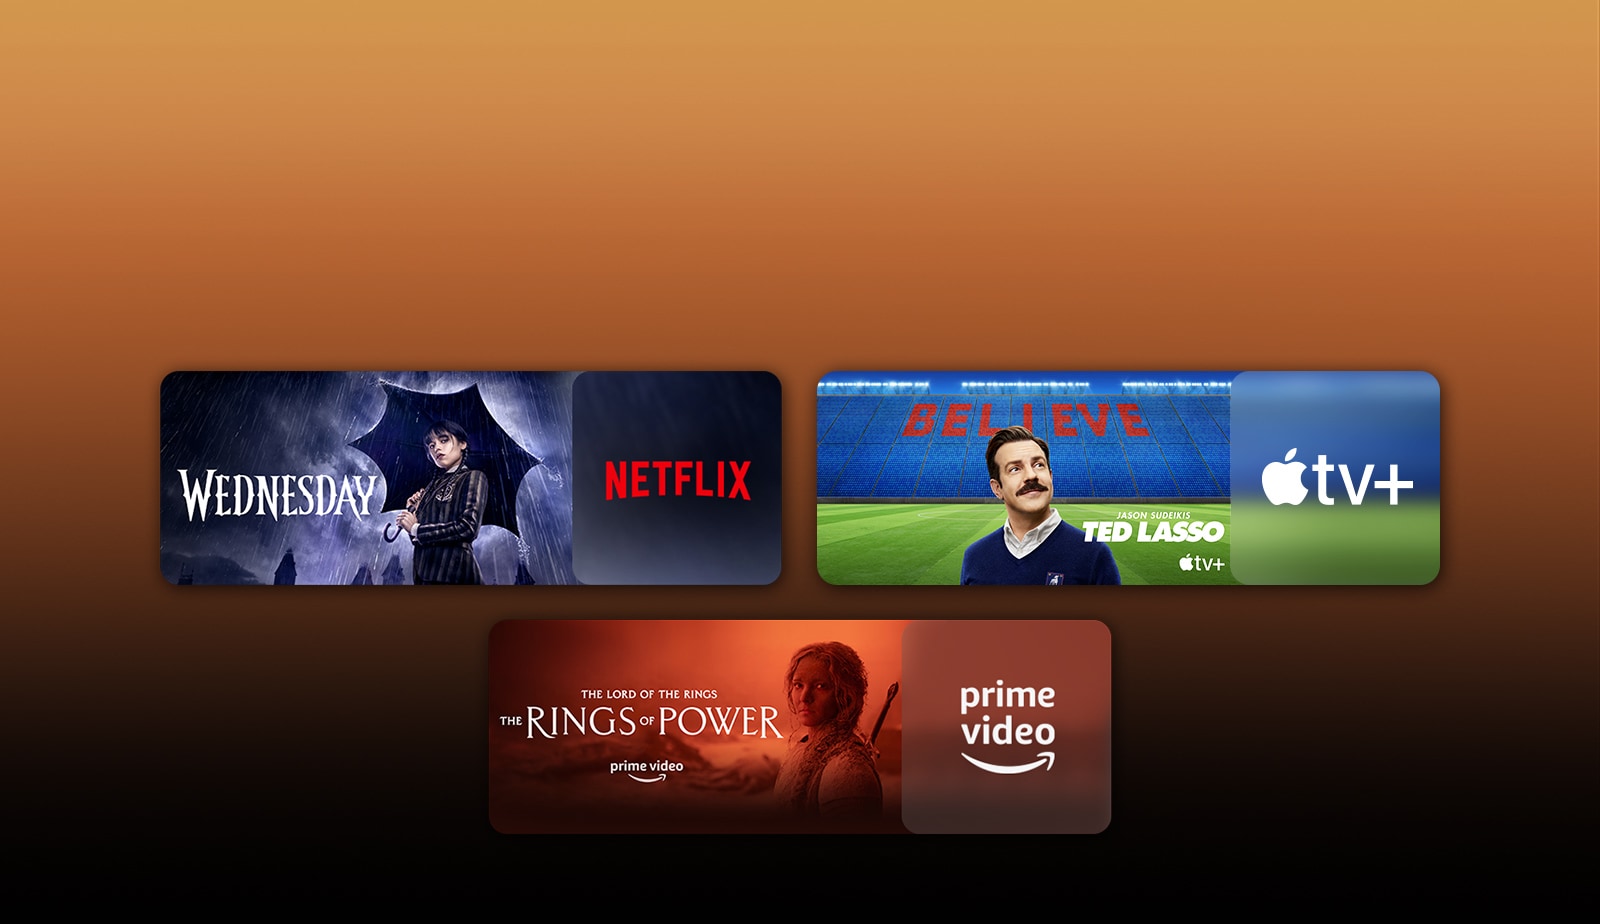 لوگوهای پلتفرم‌های سرویس پخش آنلاین و تصاویر فیلم‌های مربوط به آنها درست در کنار هر لوگو درج شده‌اند. تصاویری از چهارشنبه از Netflix، تد لاسو از Apple TV و حلقه‌های قدرت از PRIME VIDEO قابل مشاهده است.